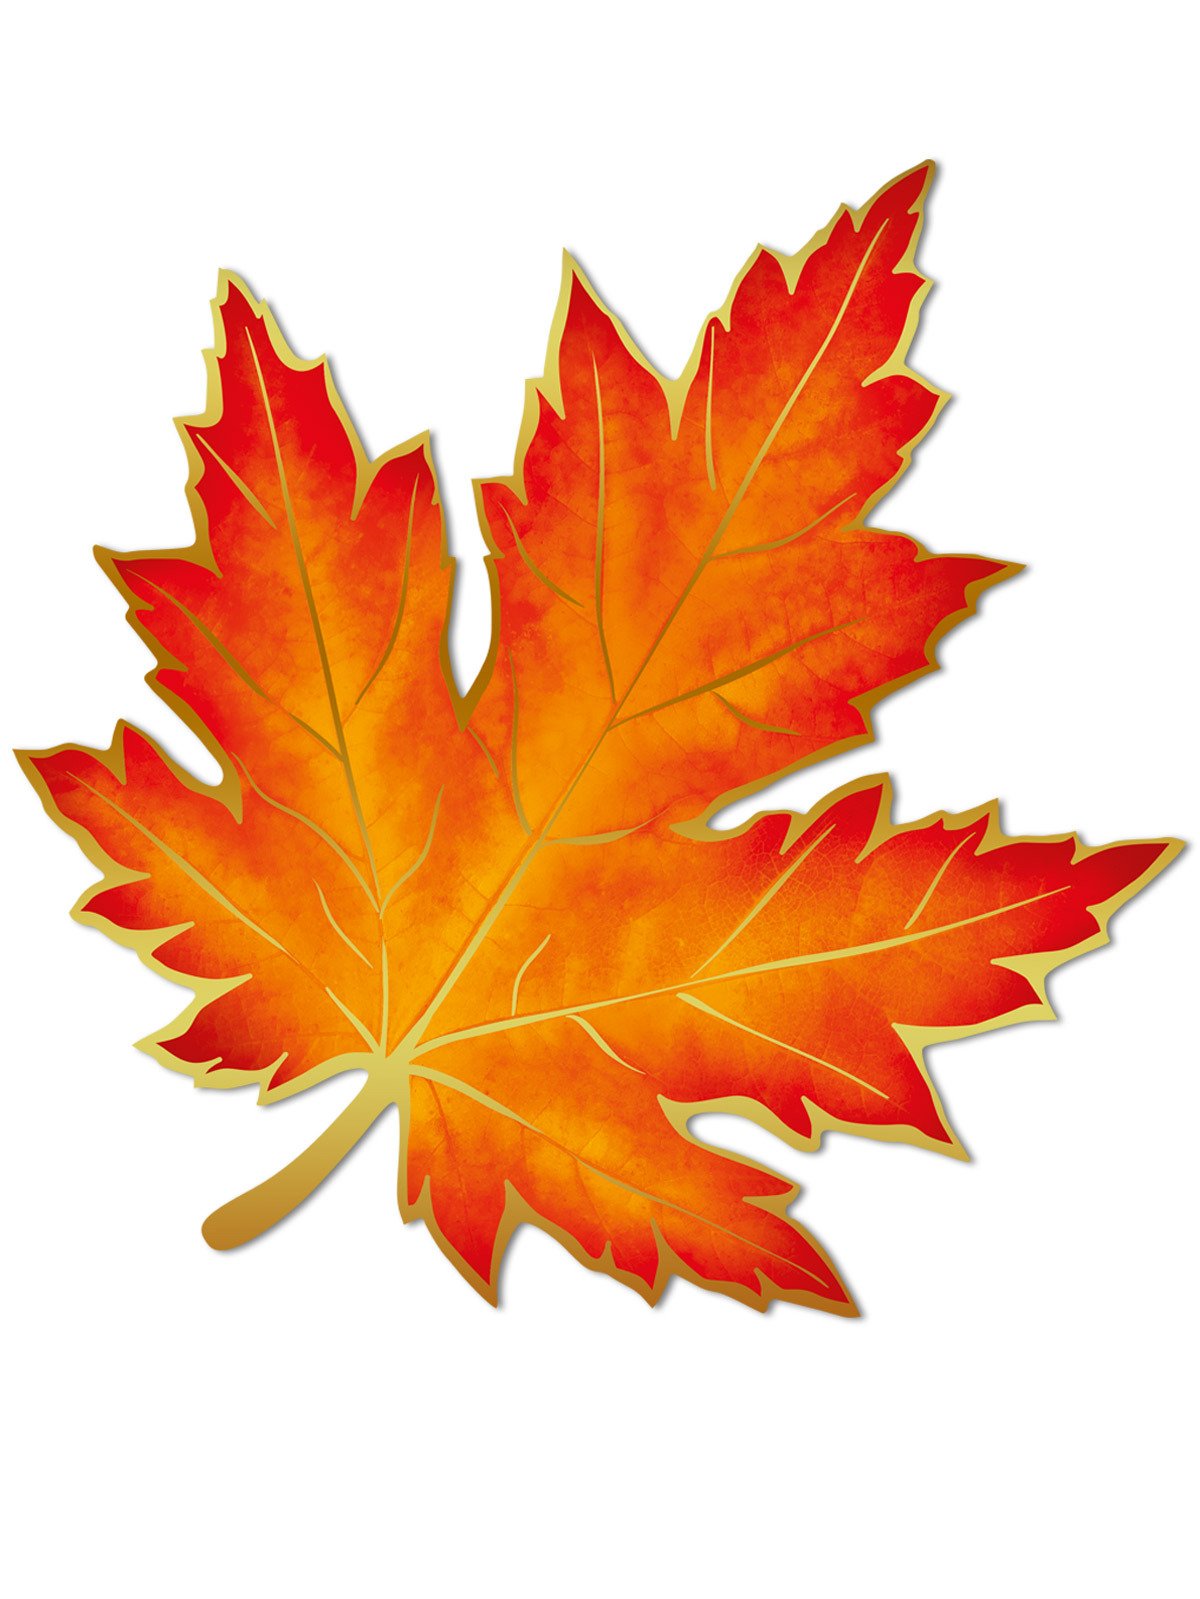 Осенние кленовые листья картинки - 64 фото